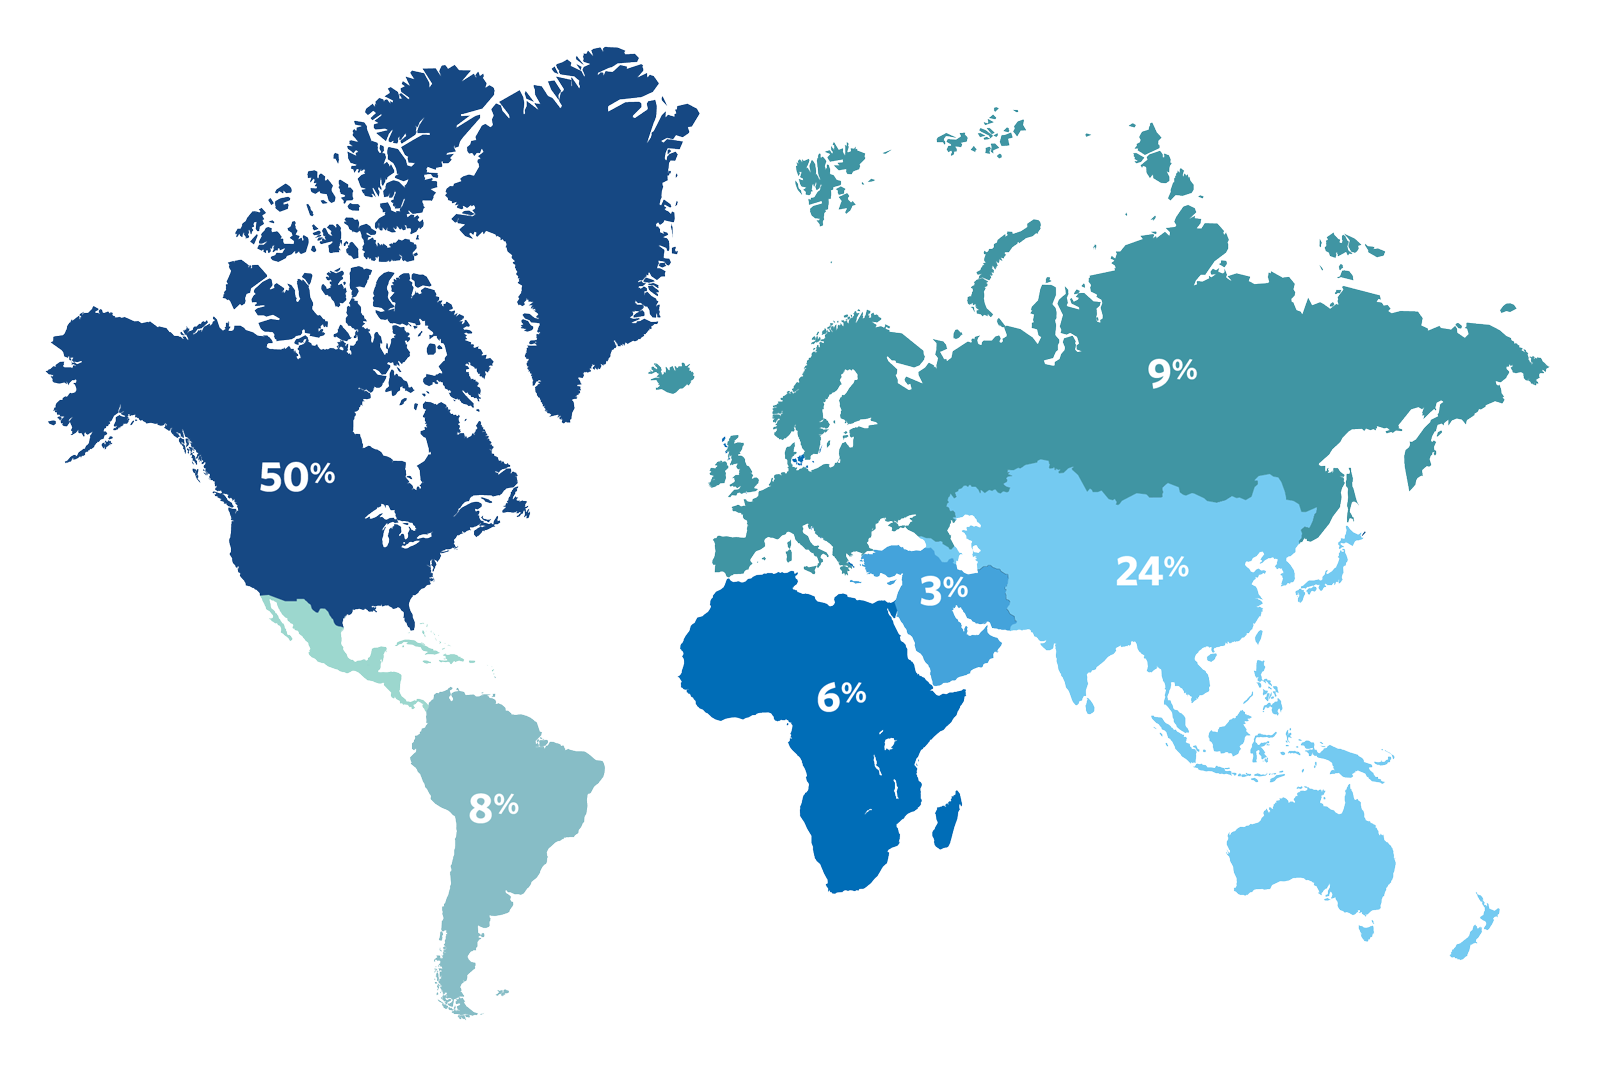 Executive Development Program participants by region